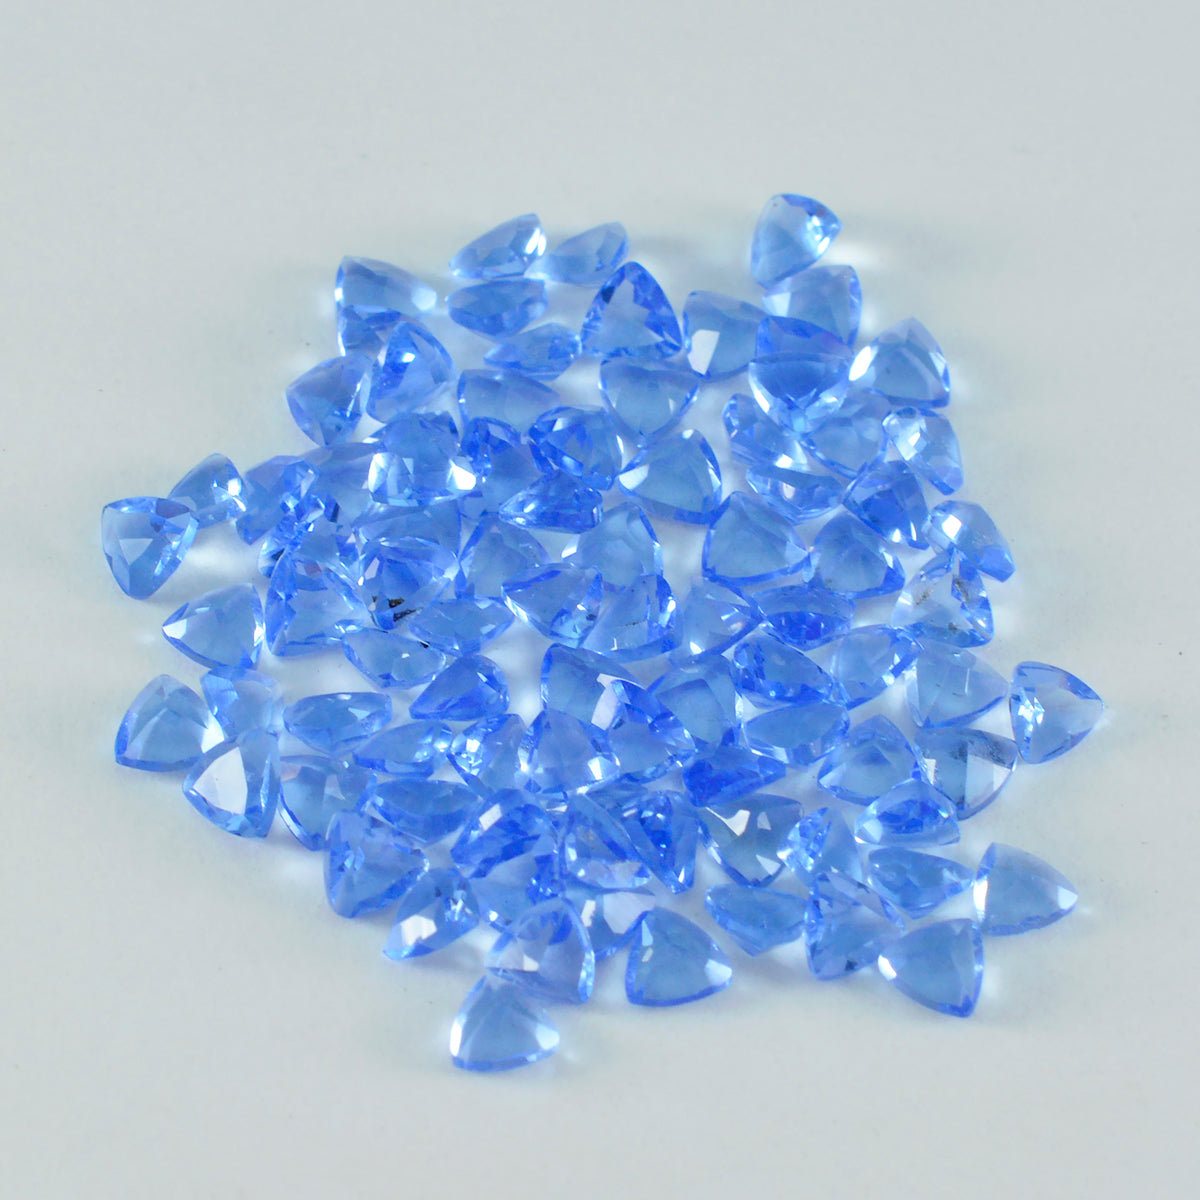 Riyogems 1 Stück blauer Saphir, CZ, facettiert, 3 x 3 mm, Billionenform, wunderschöner Qualitätsstein